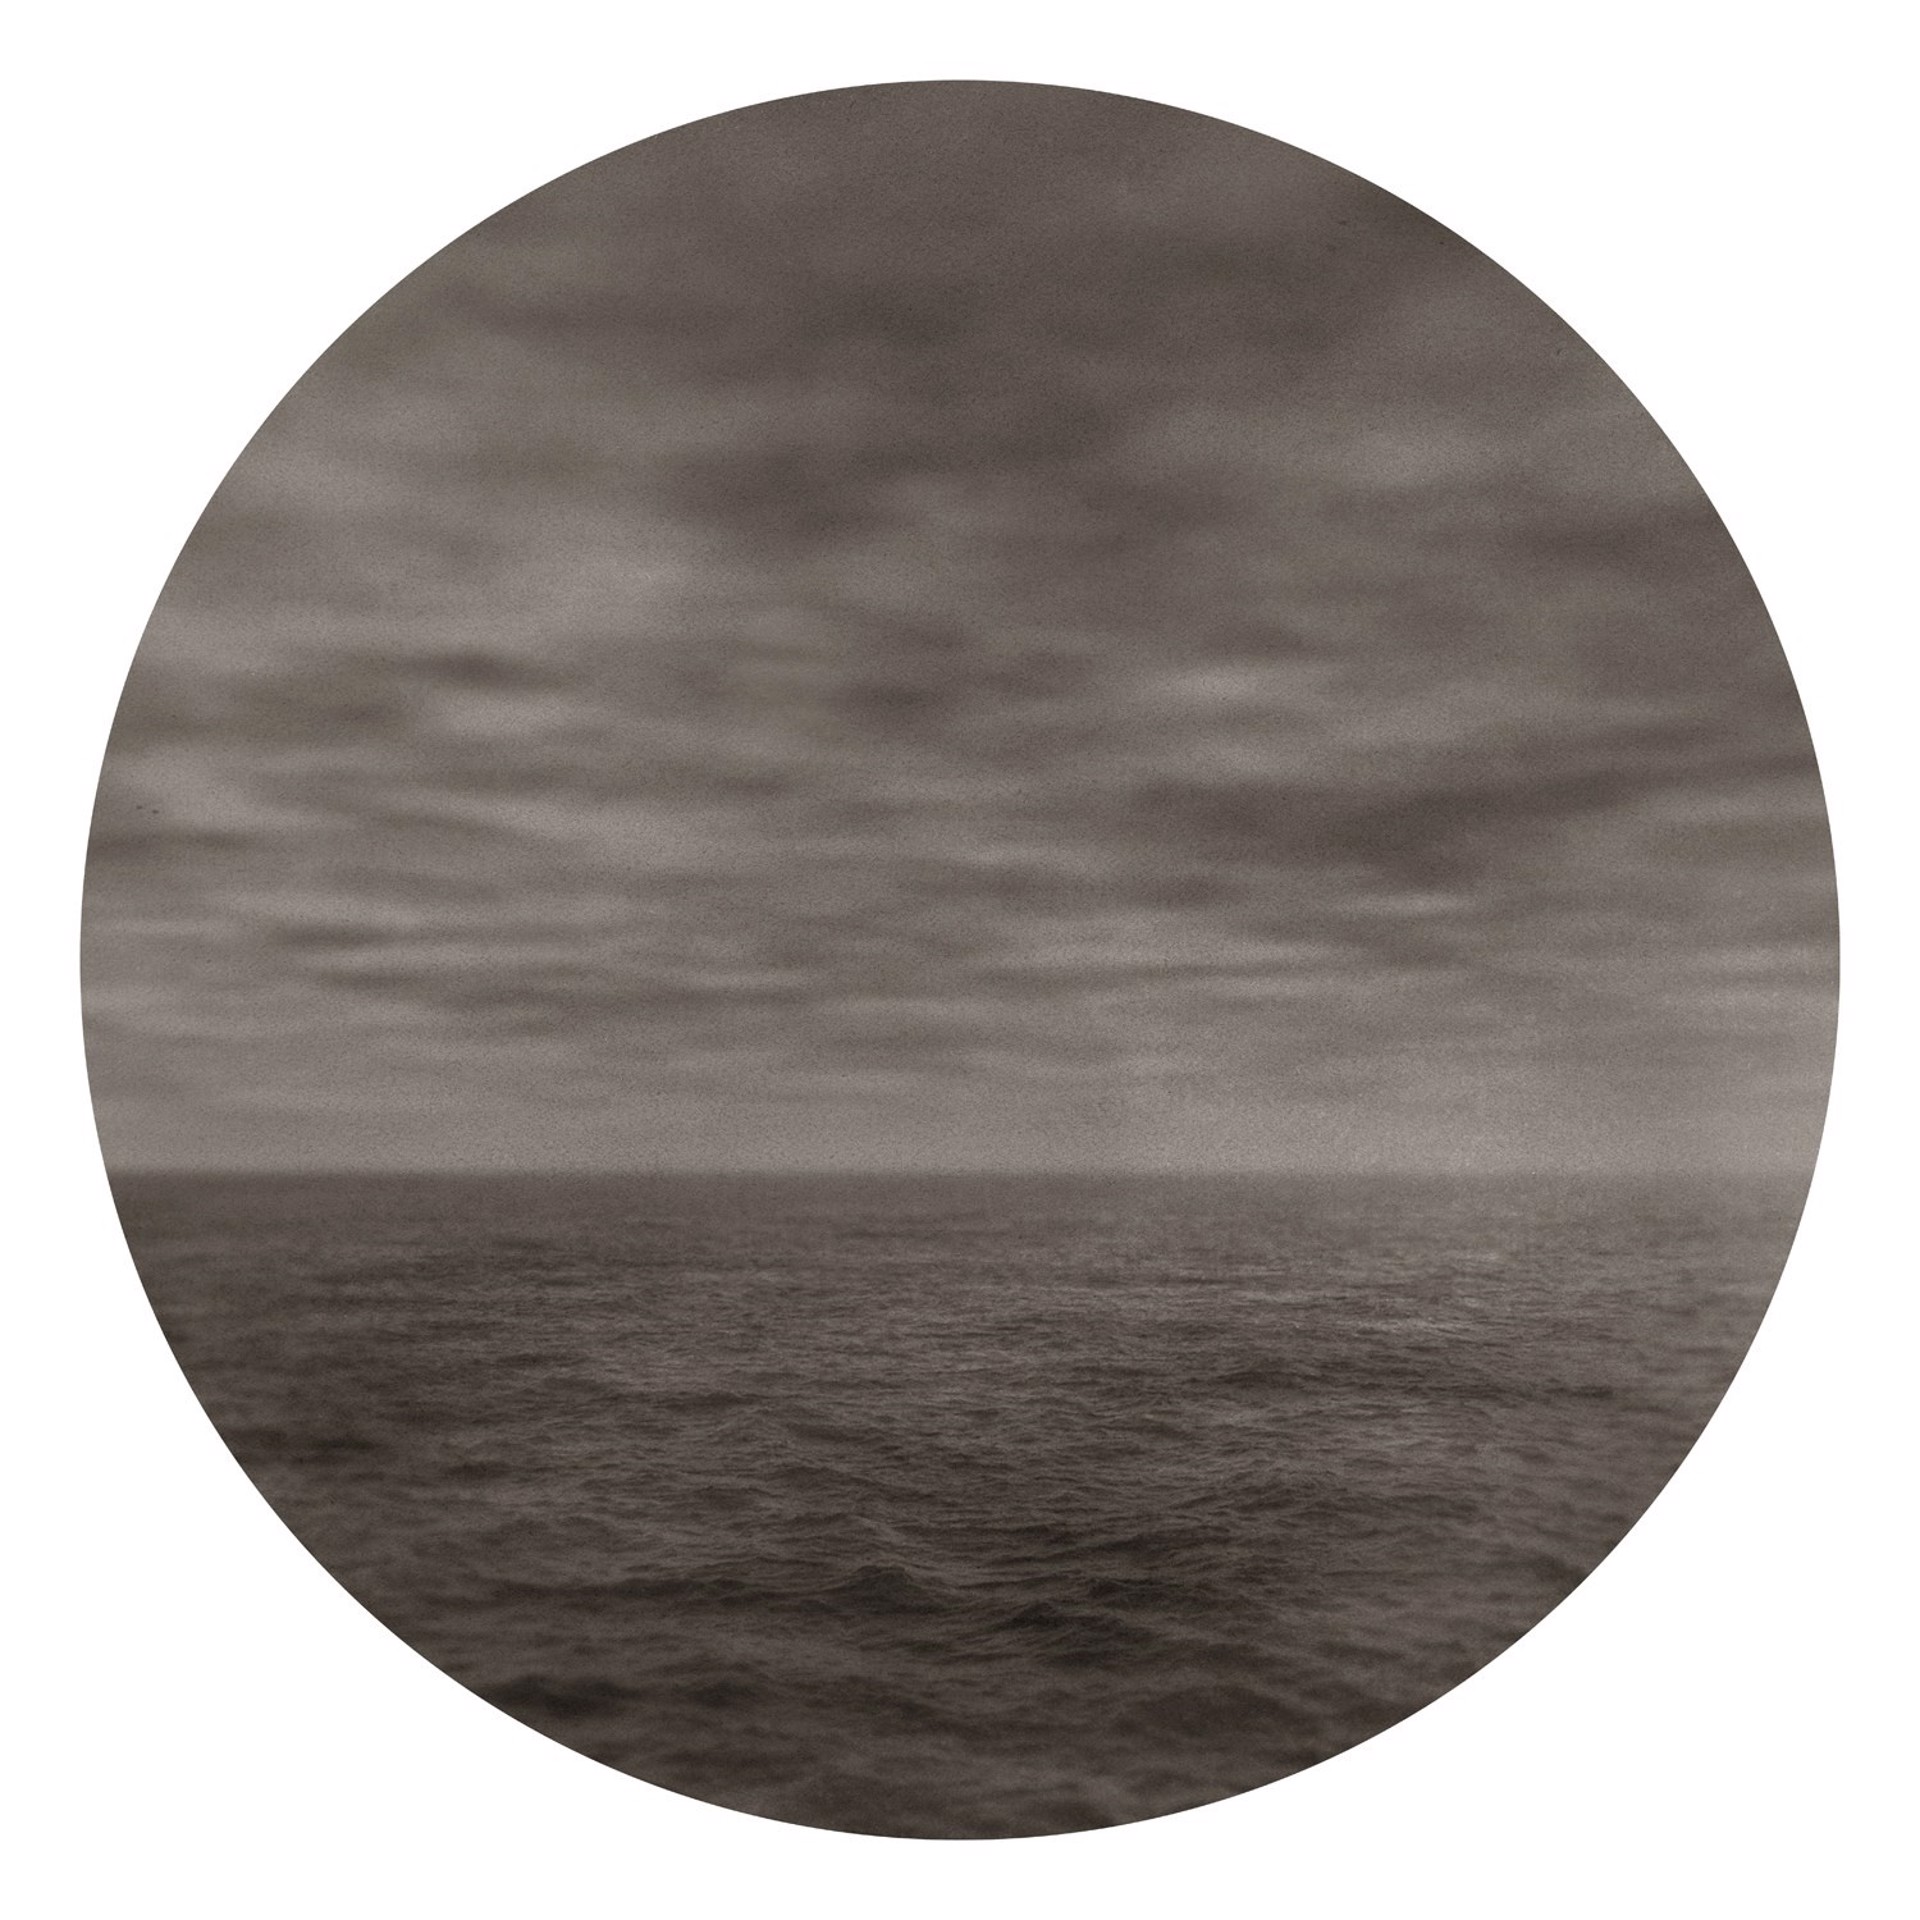 Calm Sea 825 by Ted Kincaid